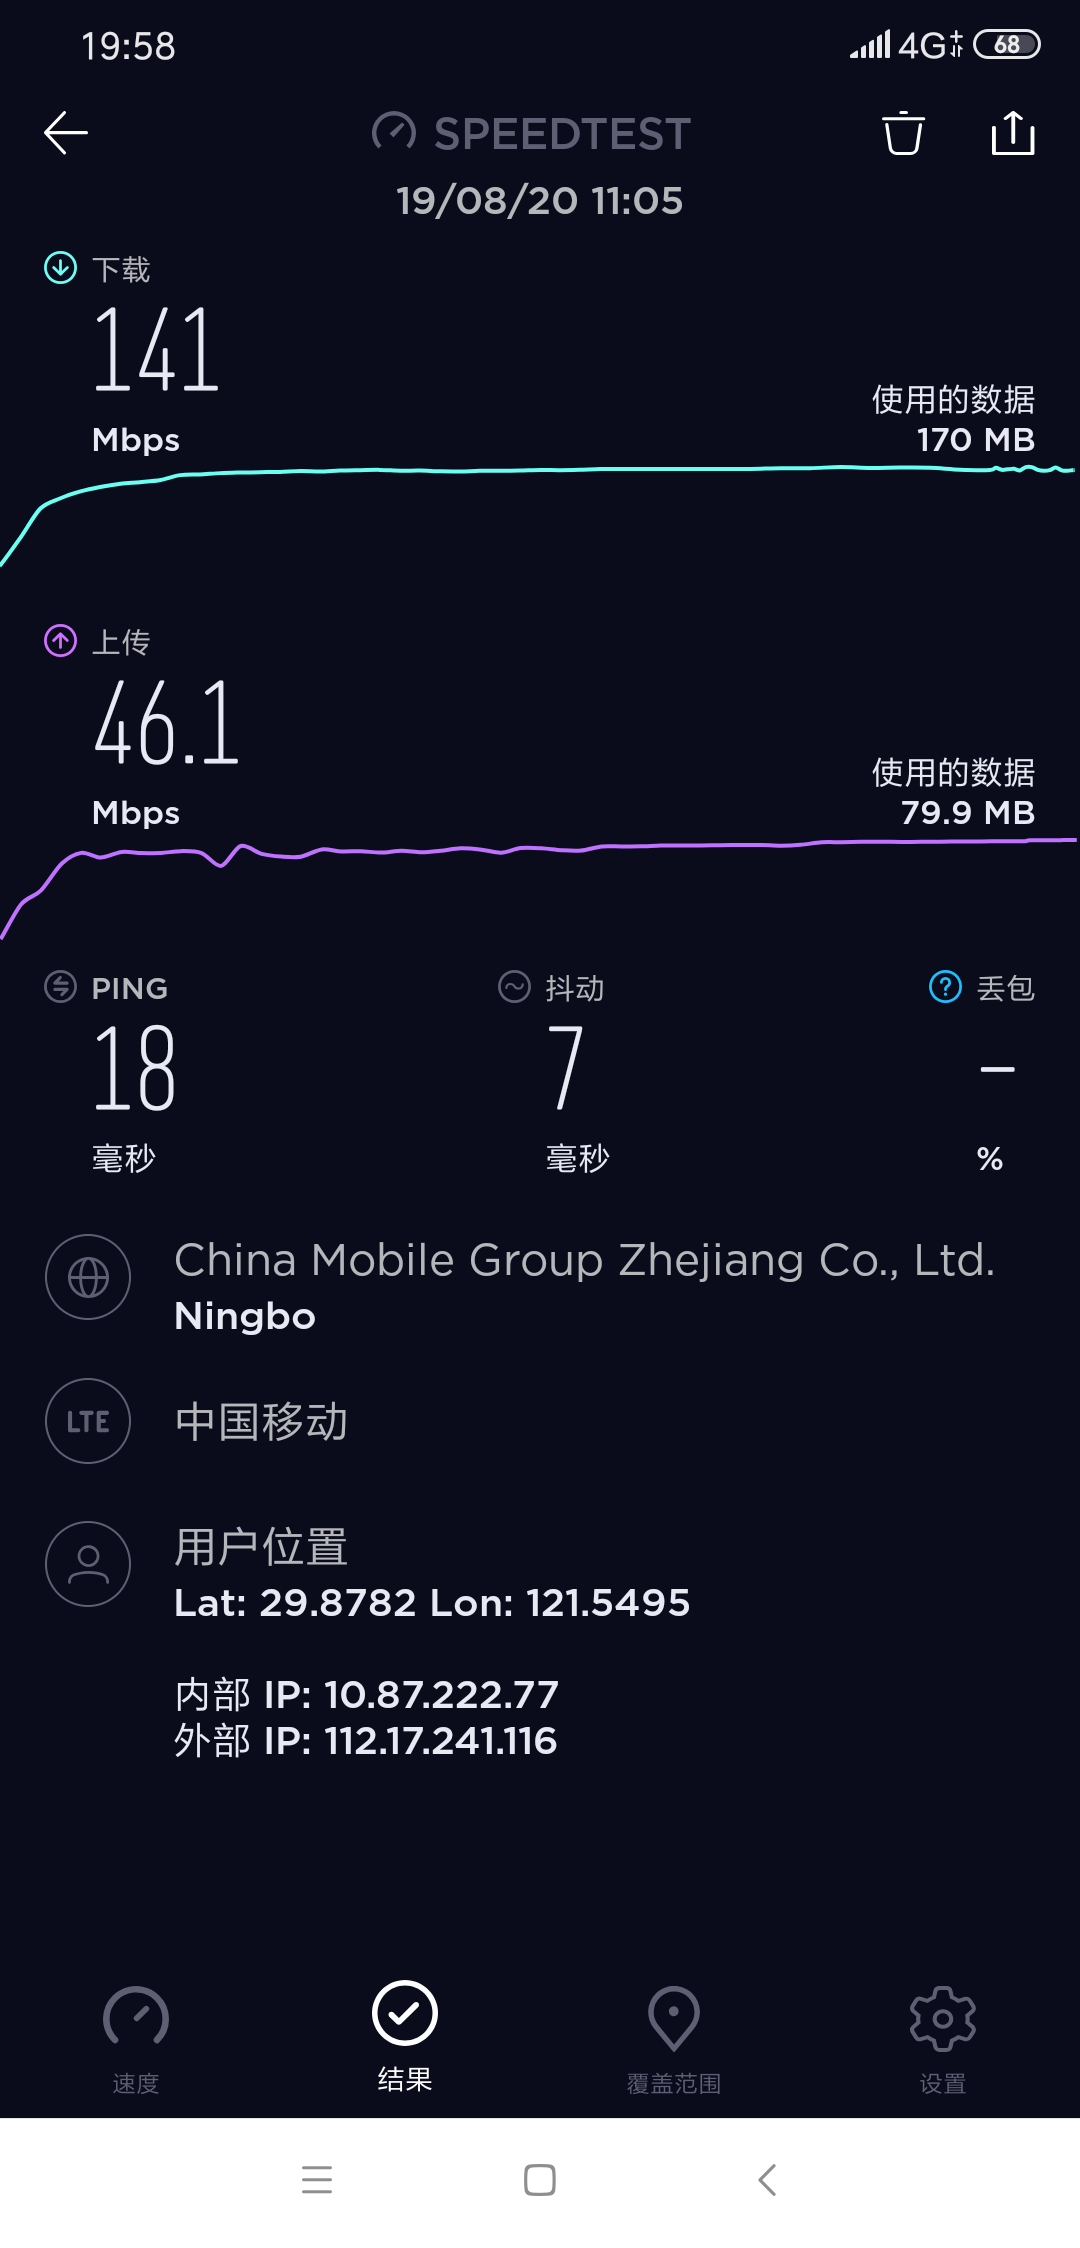 Screenshot_2019-08-20-19-58-39-202_org.zwanoo.android.speedtest.png